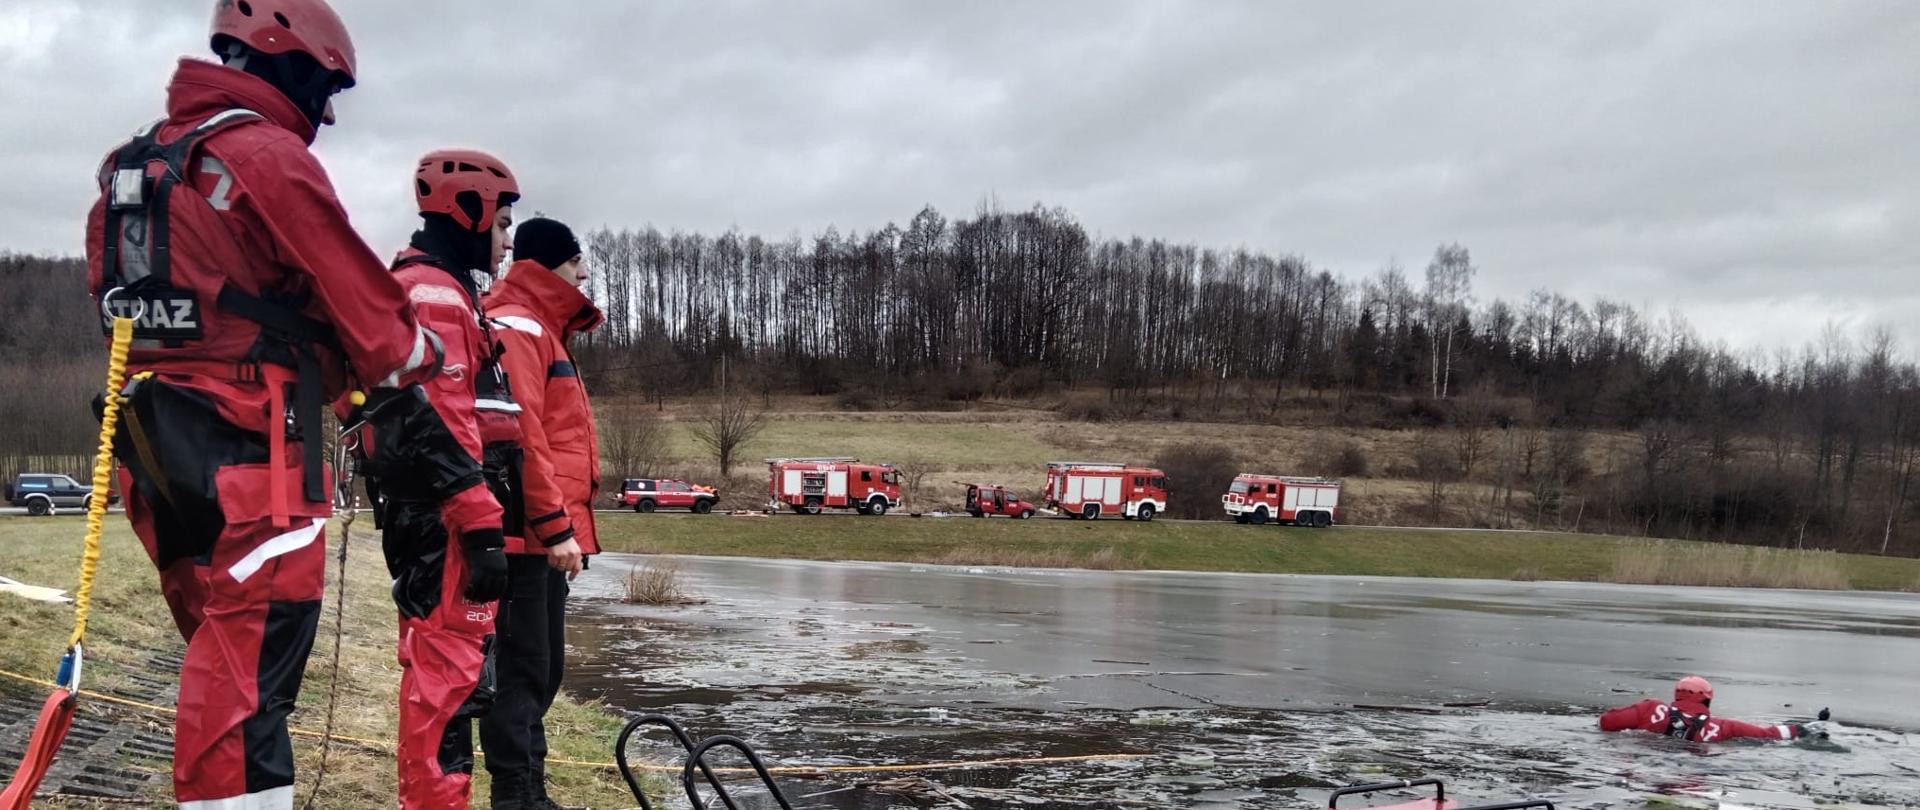 Kolorowa fotografia w pochmurny dzień wykonana na zalodzonym akwenie. Przedstawia strażaka znajdującego się w wodzie ubraniu w specjalnym zabezpieczony liną, trzech strażaków znajdujących się na brzegu również w ubraniach specjalnych oraz sanie lodowe. W tle samochody pożarnicze.